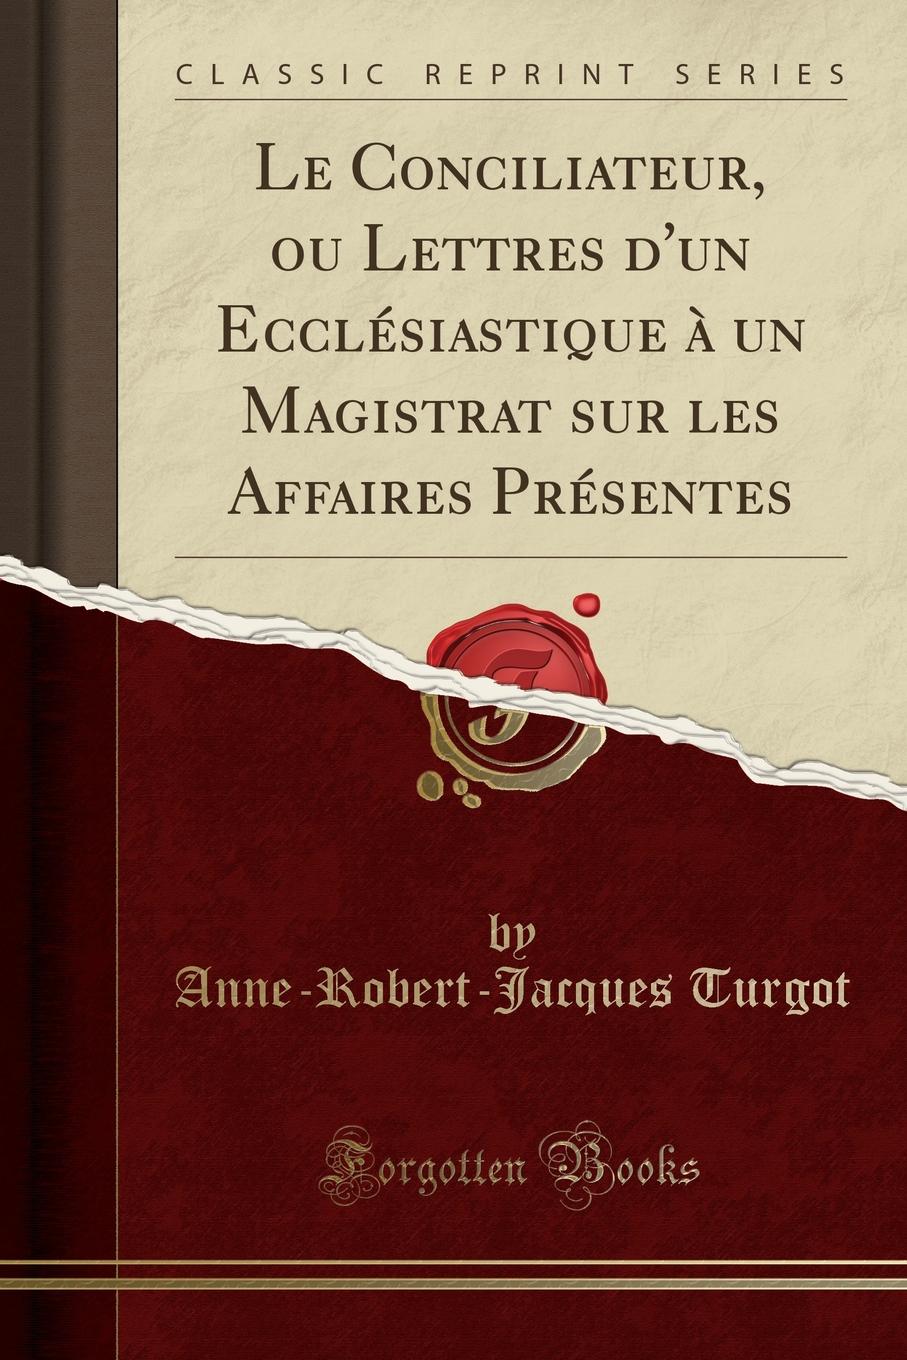 Le Conciliateur, ou Lettres d.un Ecclesiastique a un Magistrat sur les Affaires Presentes (Classic Reprint)